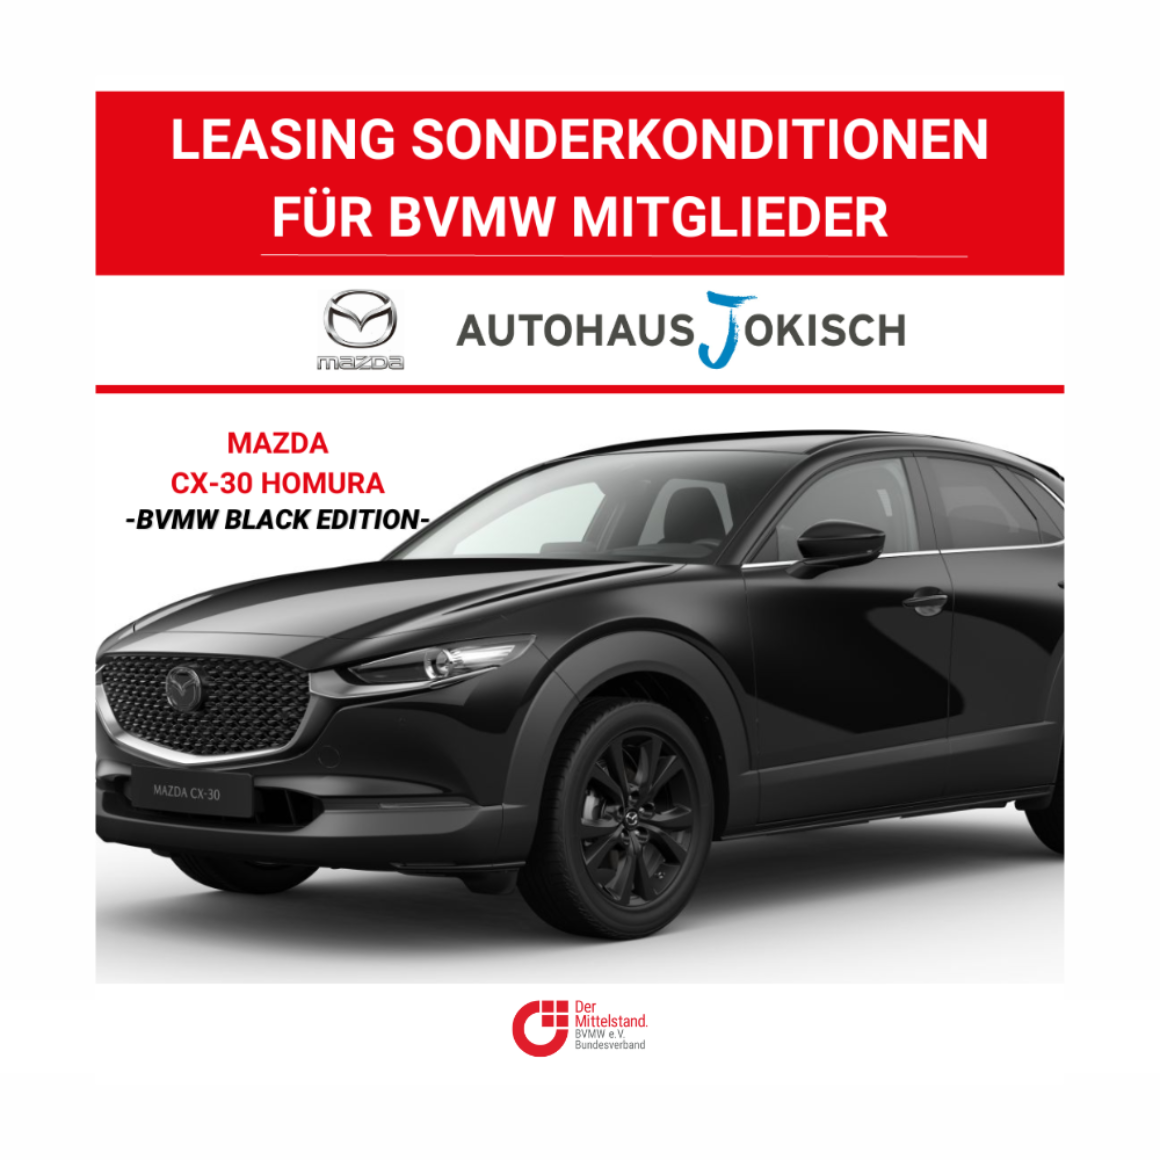 MazdaJokisch_BVMW_Sonderkonditionen